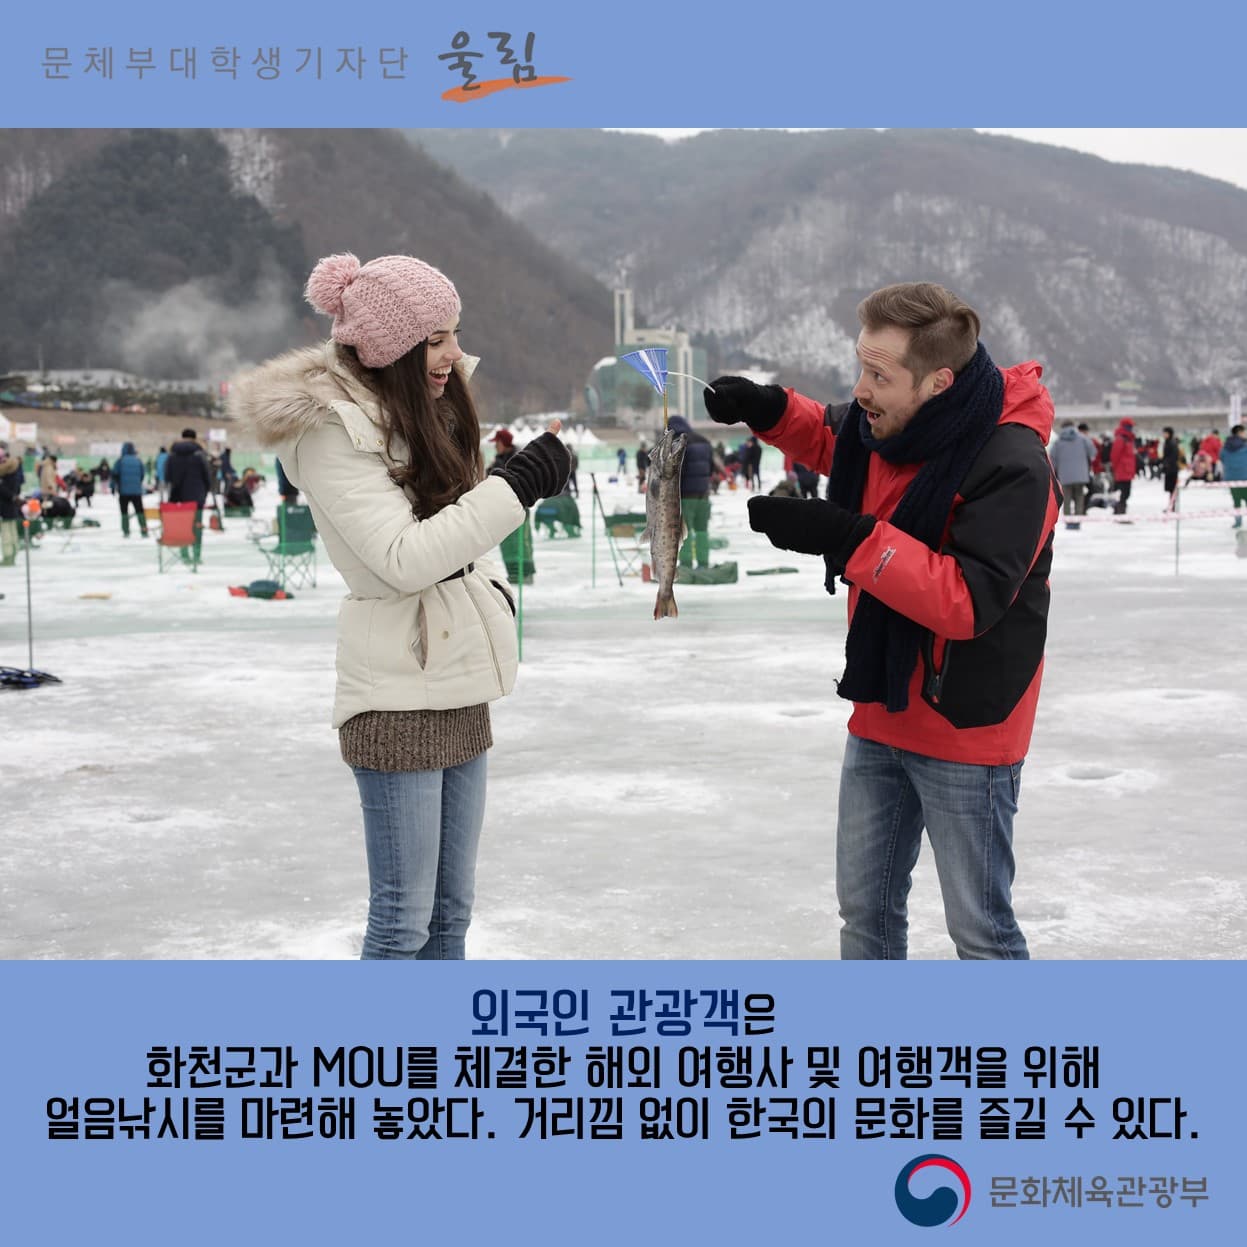 외국인 관광객은 화천군과 MOU를 체결한 해외 여행사 및 여행객을 위해 얼음낚시를 마련해 놓았다. 거리낌 없이 한국의 문화를 즐길 수 있다. 